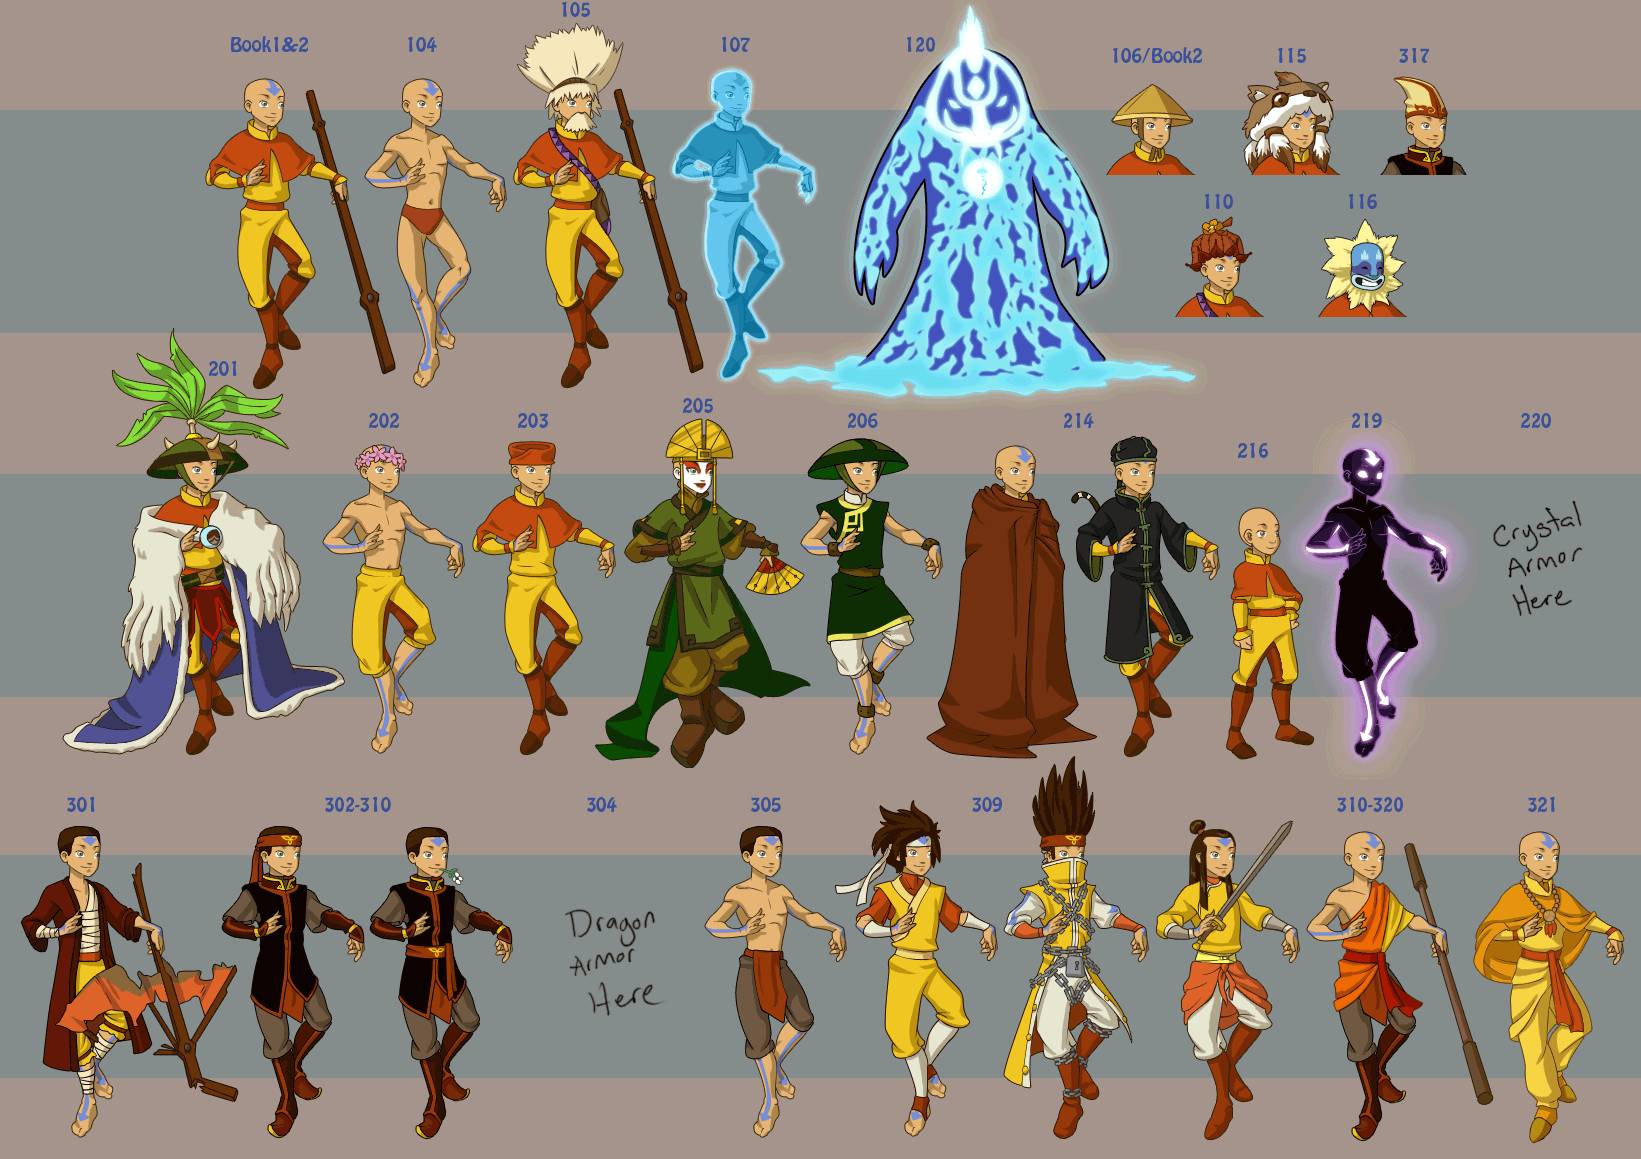 Cool Avatar Aang Wallpapers - Top Những Hình Ảnh Đẹp